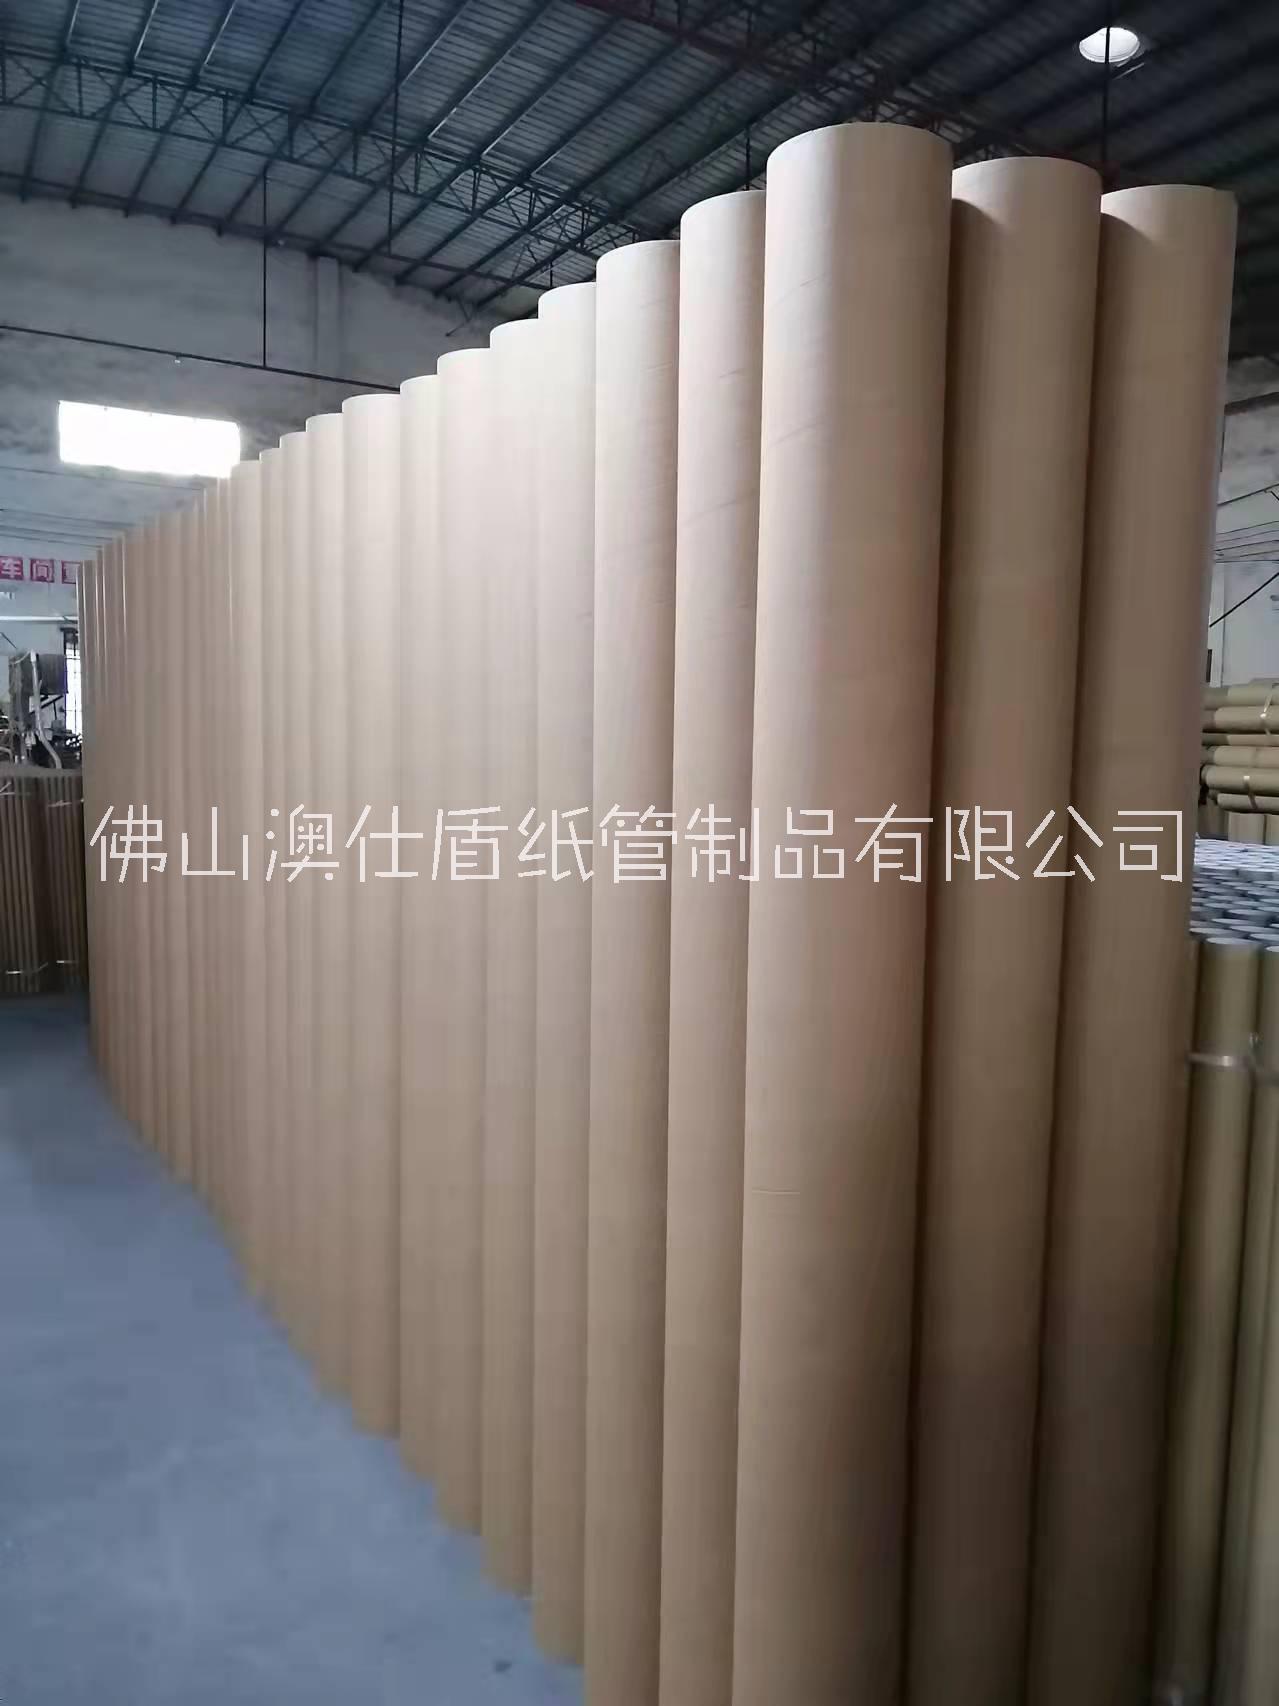 供应广州工业大纸管 纸管打磨 纸管抛光 大口径纸管等纸管加工厂图片